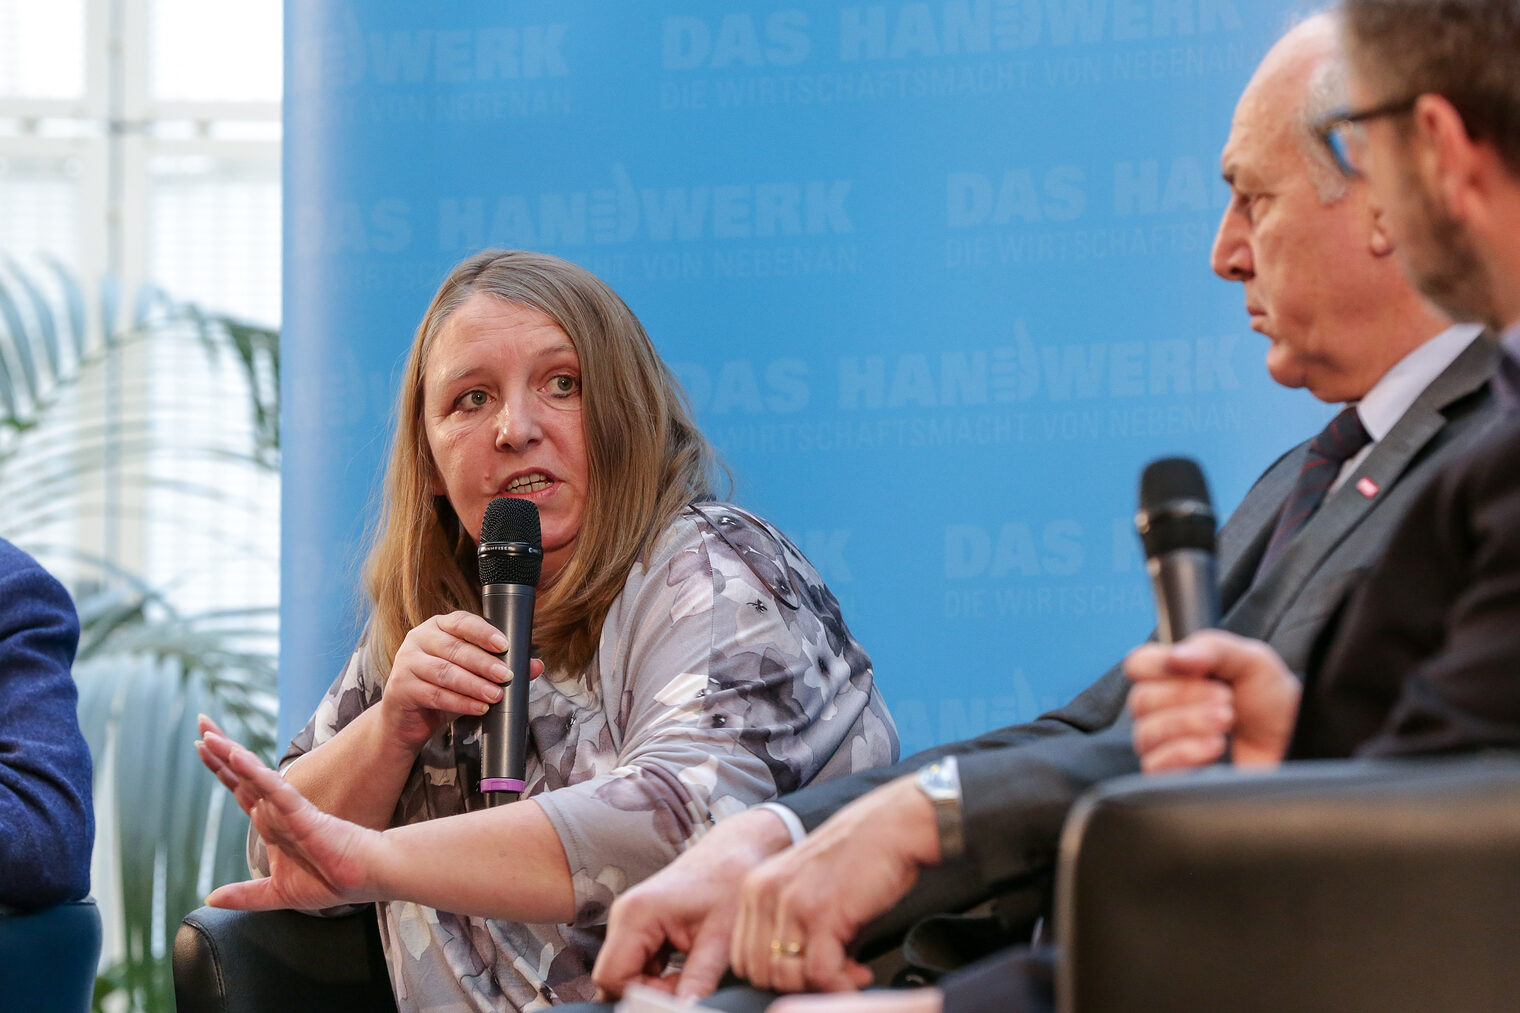 Podiumsdiskussion Preisverleihung Ideenwettbewerb "Meiner Hände Werk" Dr. Marion Esch 